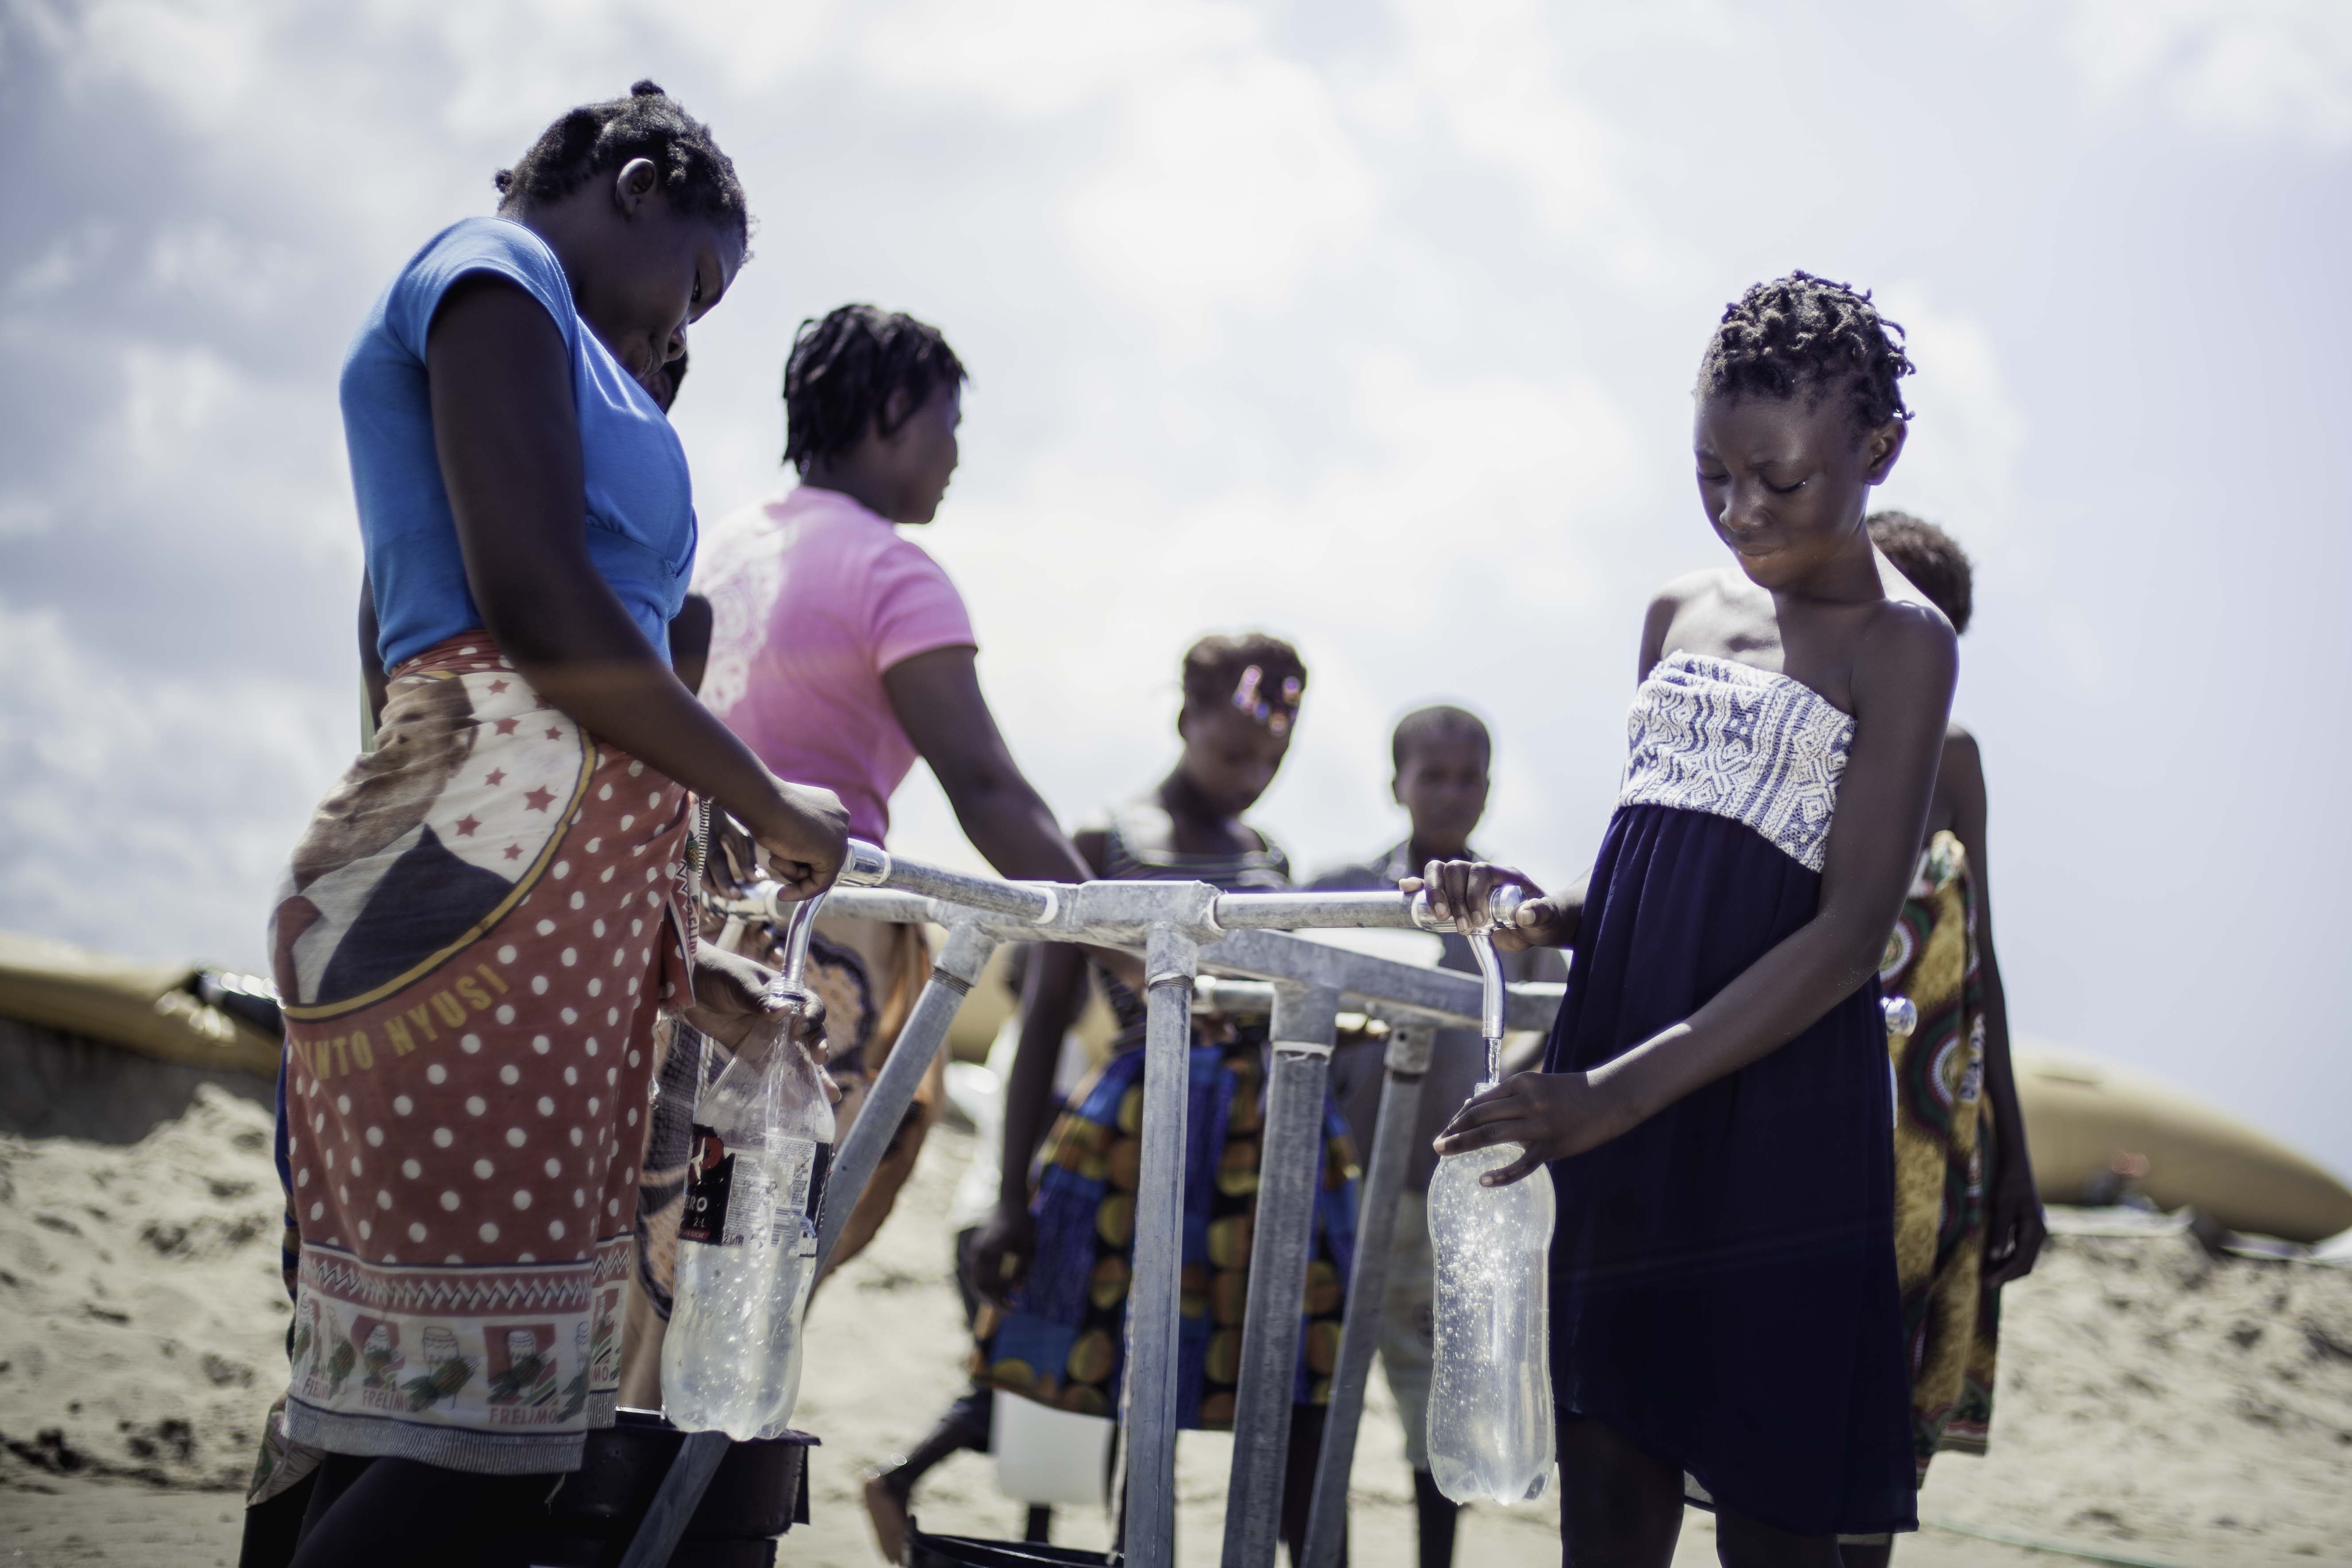 14岁的Teresa Jone Vilanculos（右）从水龙头取水，注满自己的瓶子。 Teresa和她的家人原本居住在莫桑比克的Mangalaforte。因为房子被「伊代」摧毁，她全家被迫要逃往临时庇护中心暂住。（摄影： Micas Mondlane / 荷兰乐施会）